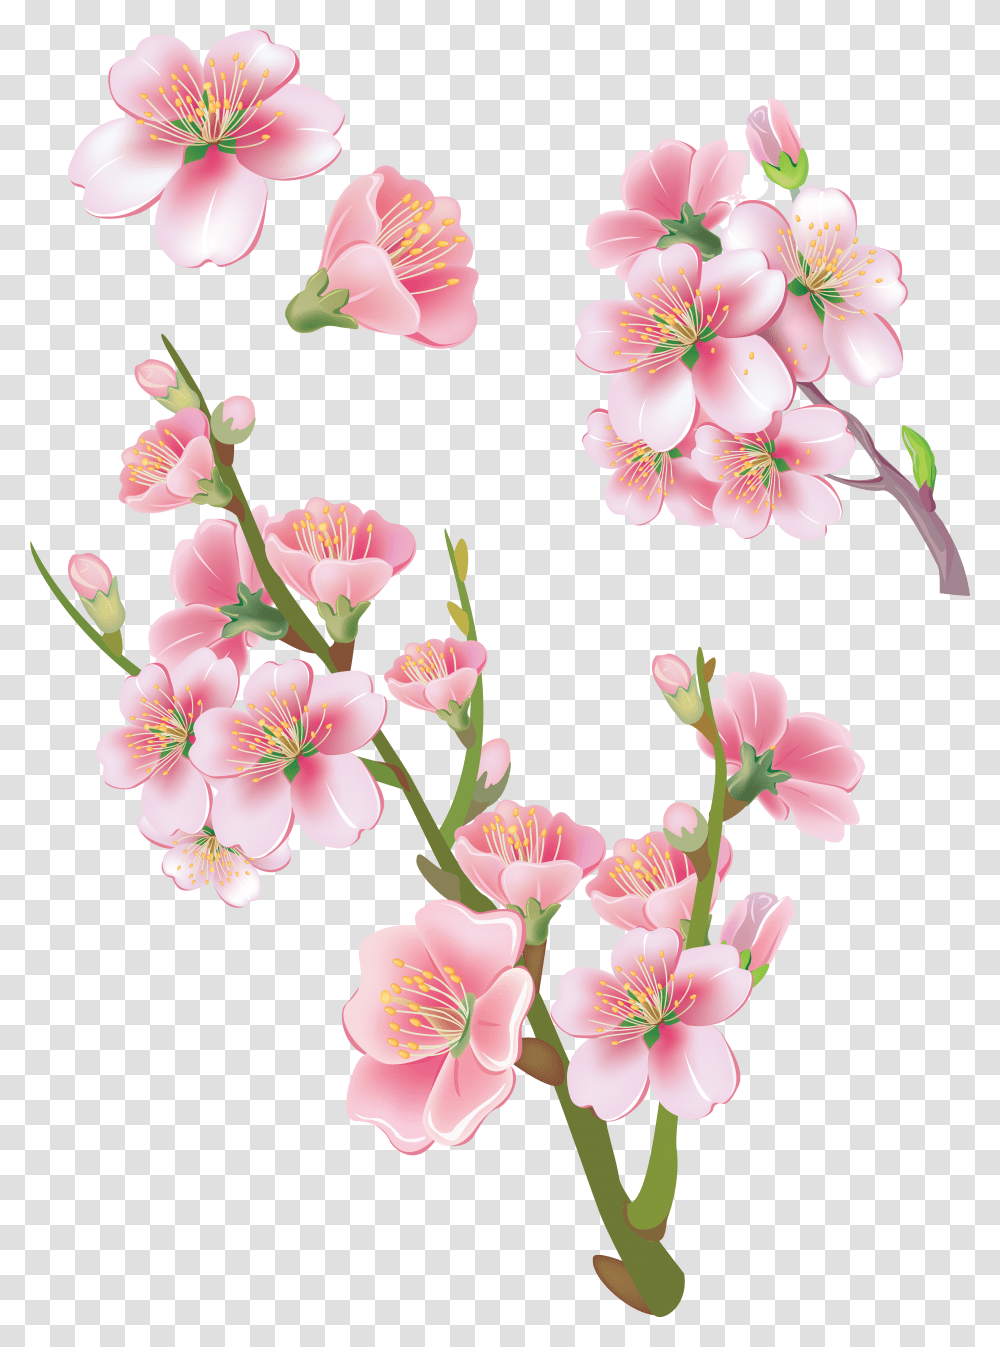 Download Sakura Image With No Bunga Sakura Transparent Png